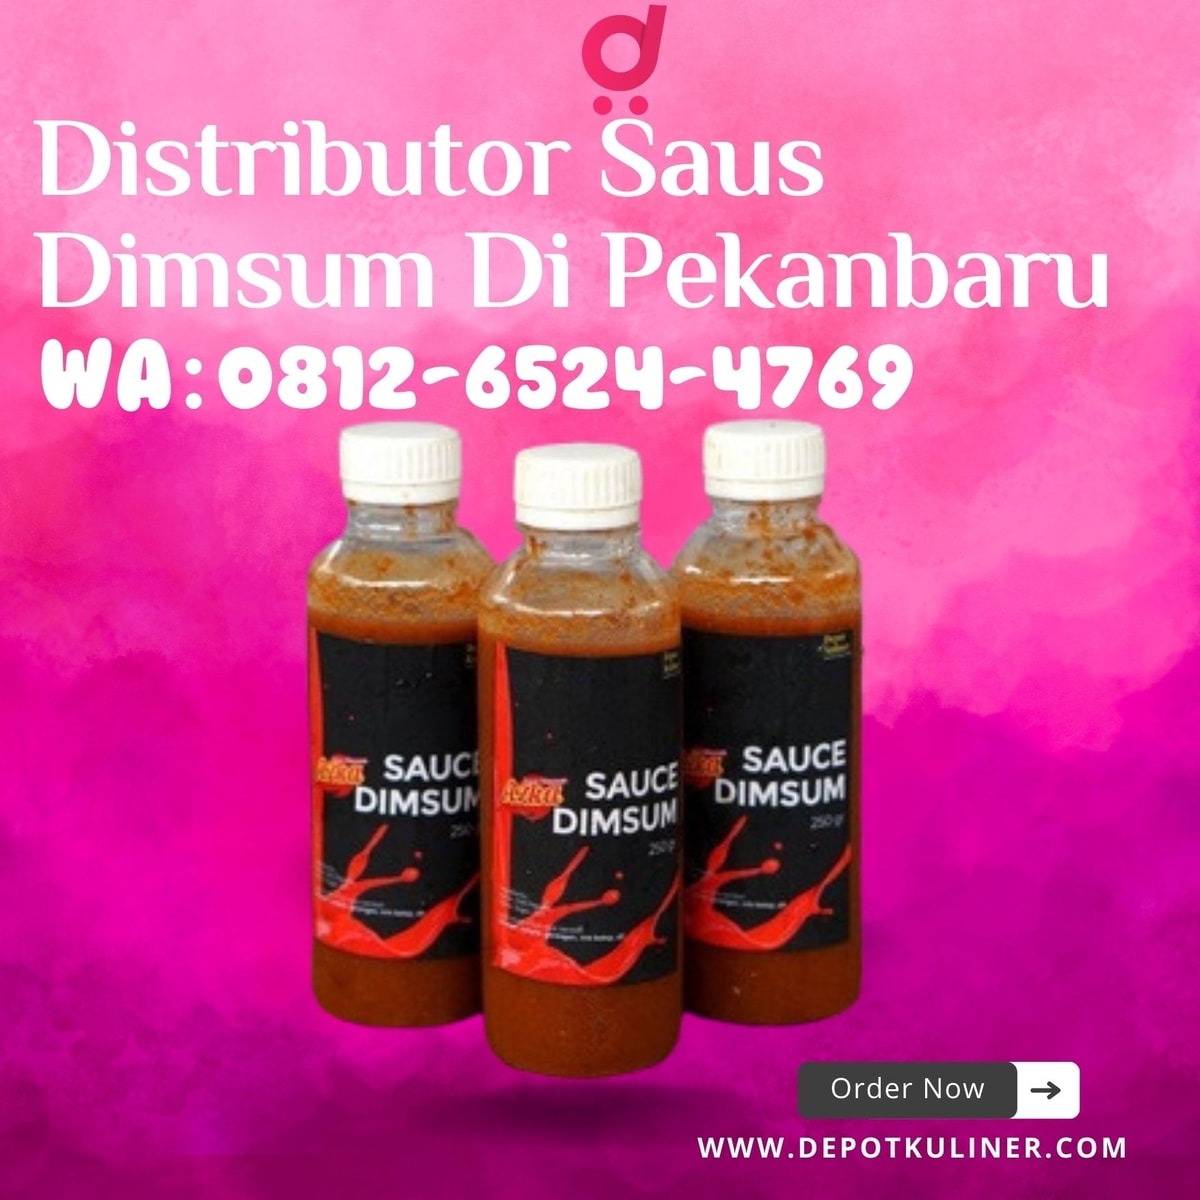 HARGA RESELLER, Call 0812-6524-4769, Distributor Saus Dimsum Di Pekanbaru